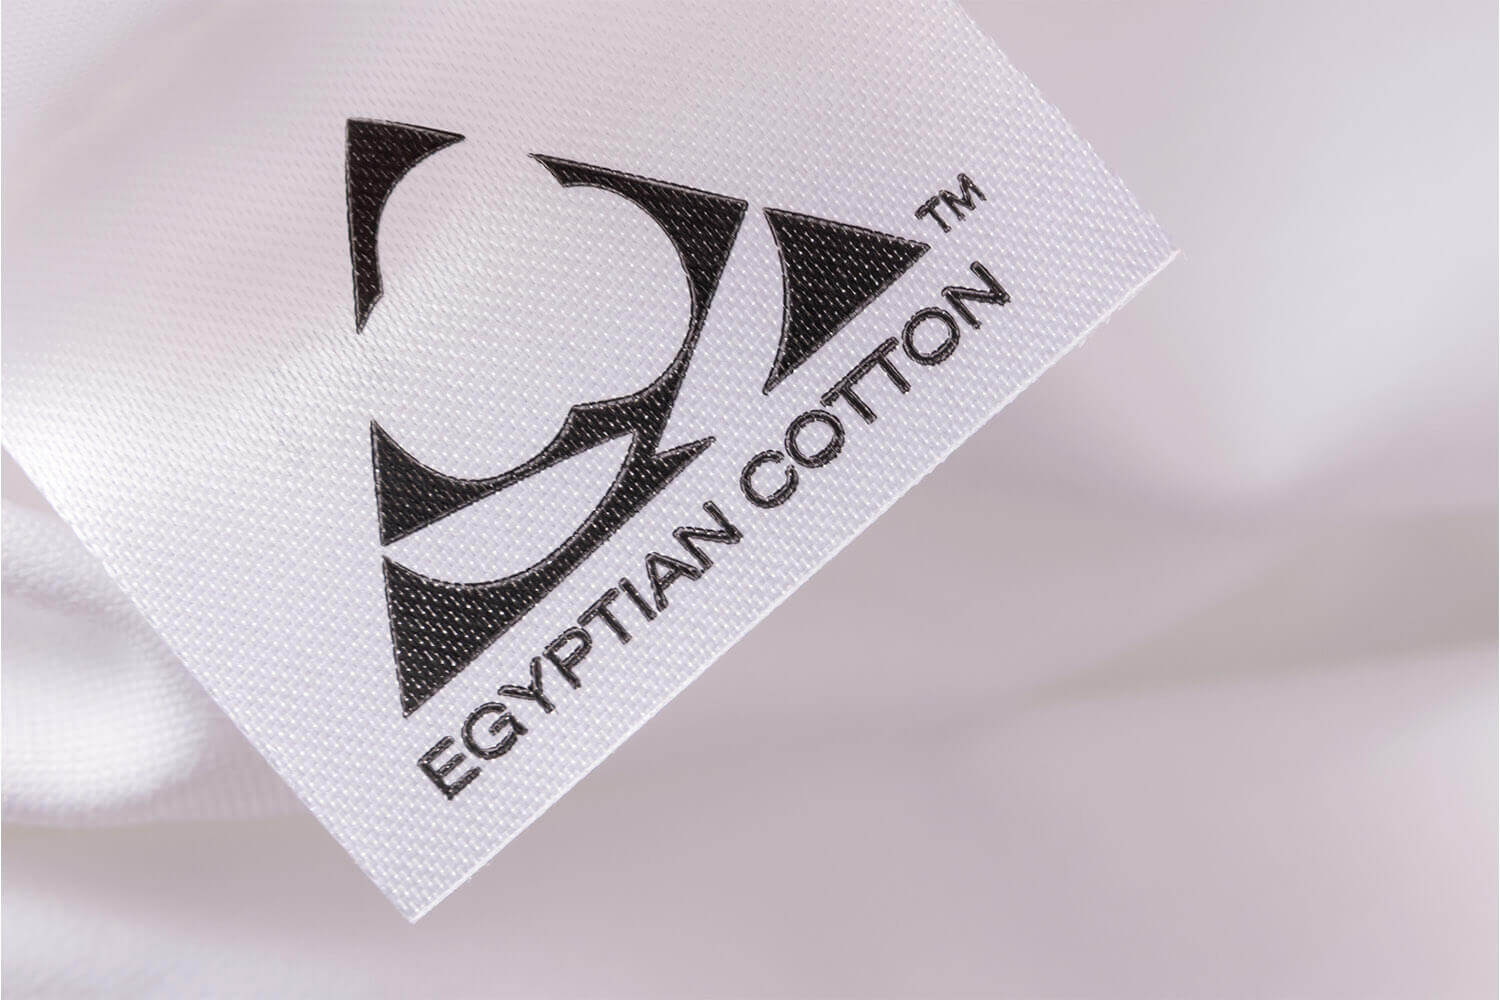 Étiquette de marque EGYPTIAN COTTON sur les draps en coton égyptien Douglas